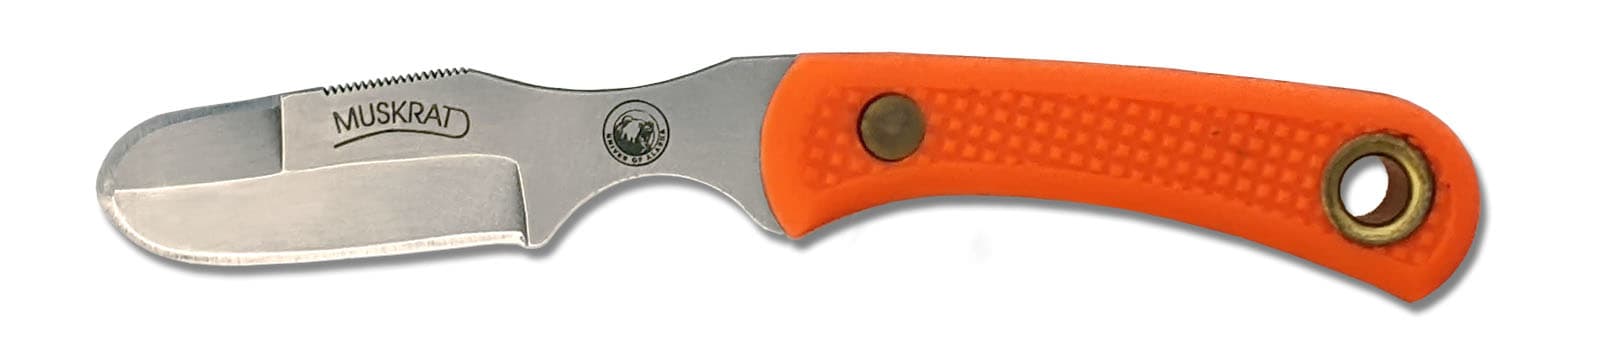 Knives Of Alaska Muskrat Orange Suregrip Fixed Blade Knife